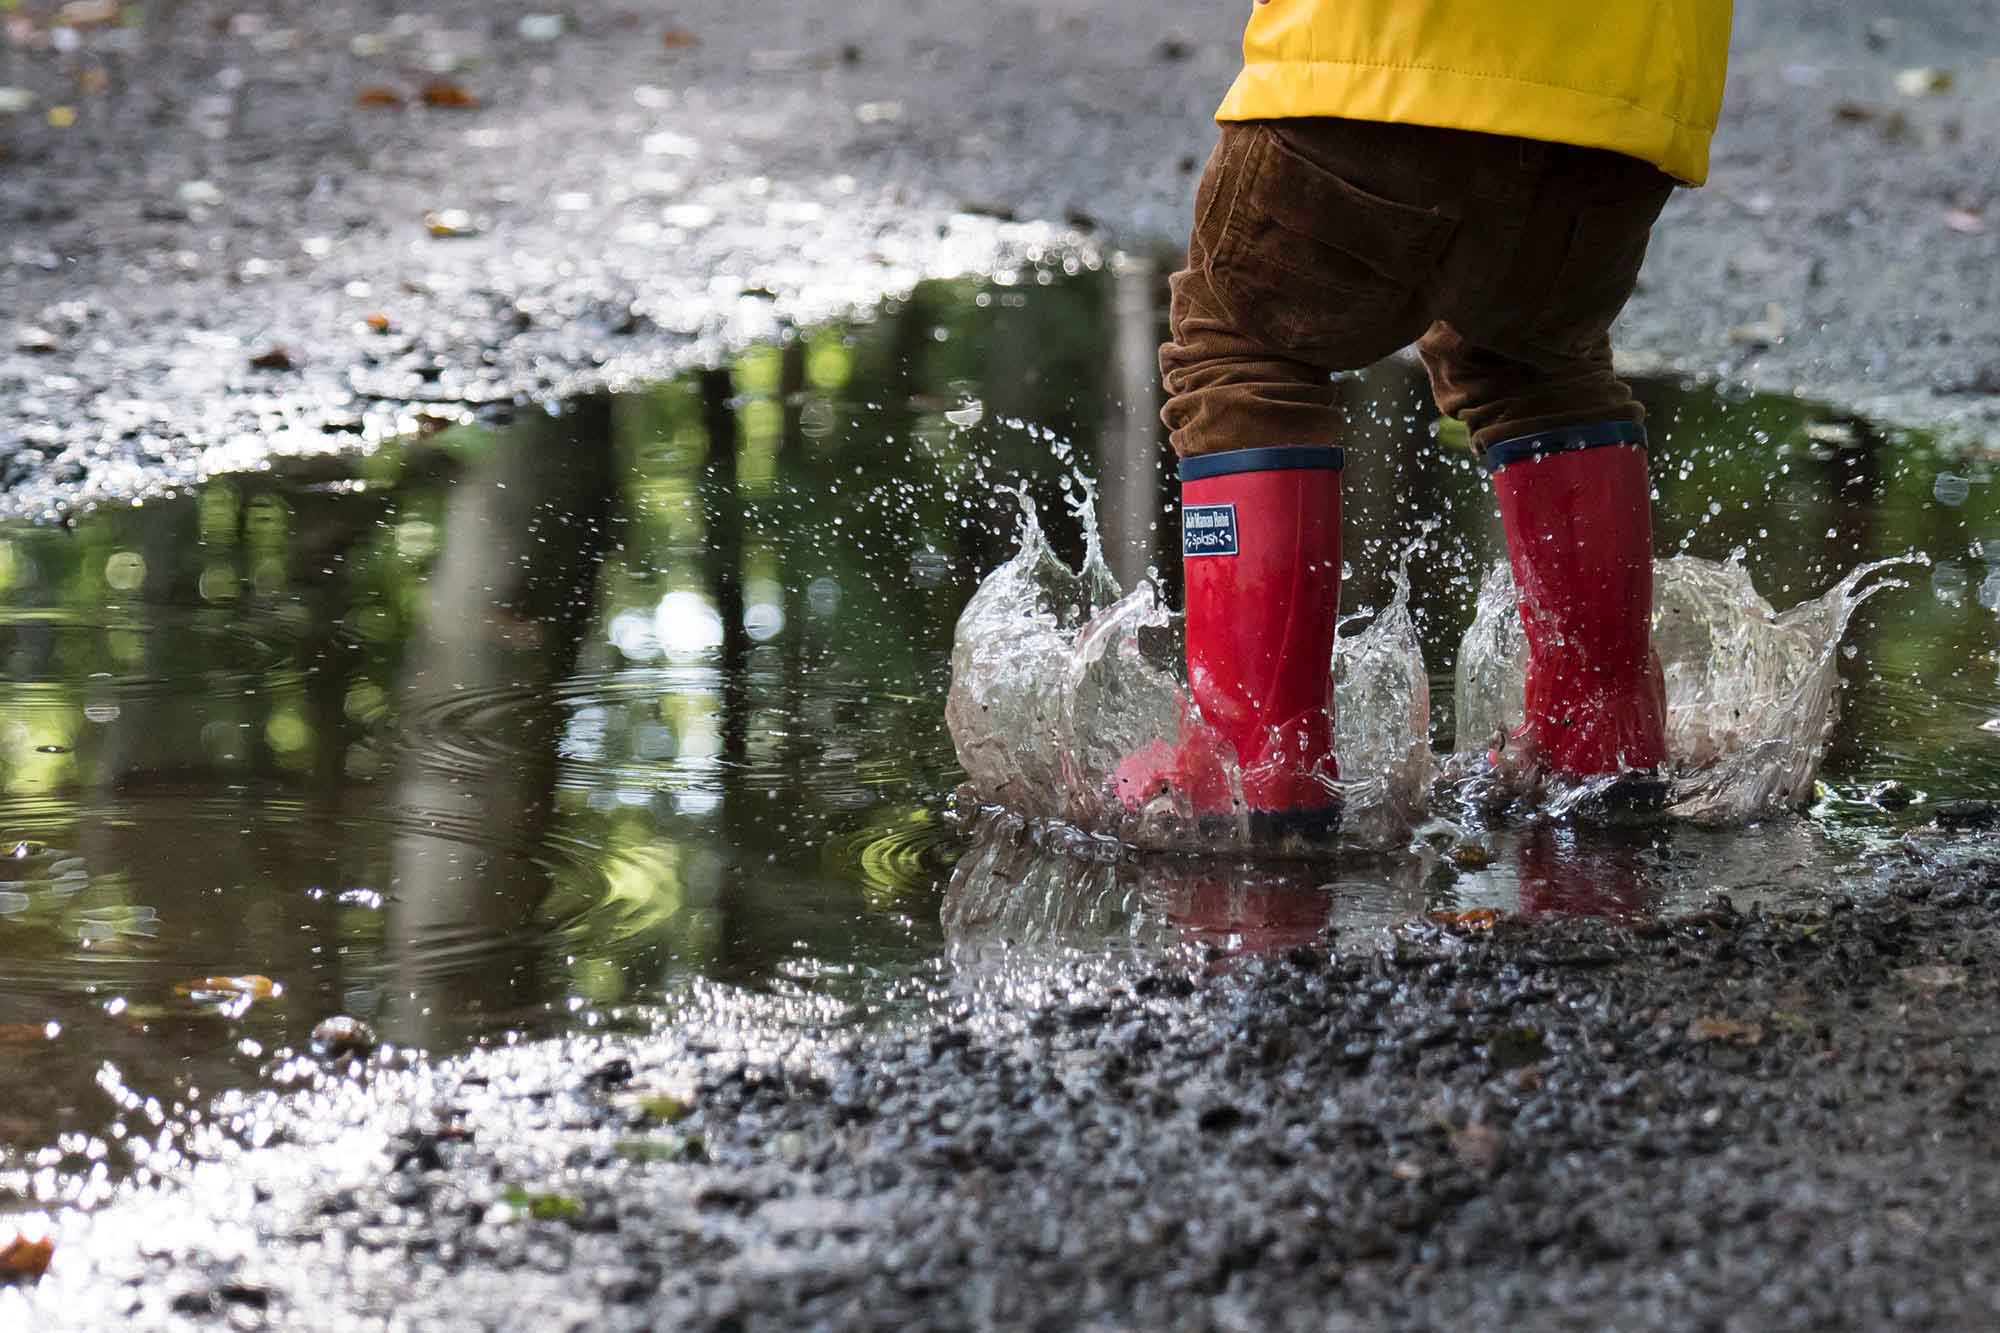 Bambino con stivali da pioggia rossi che sguazza in una pozzanghera.